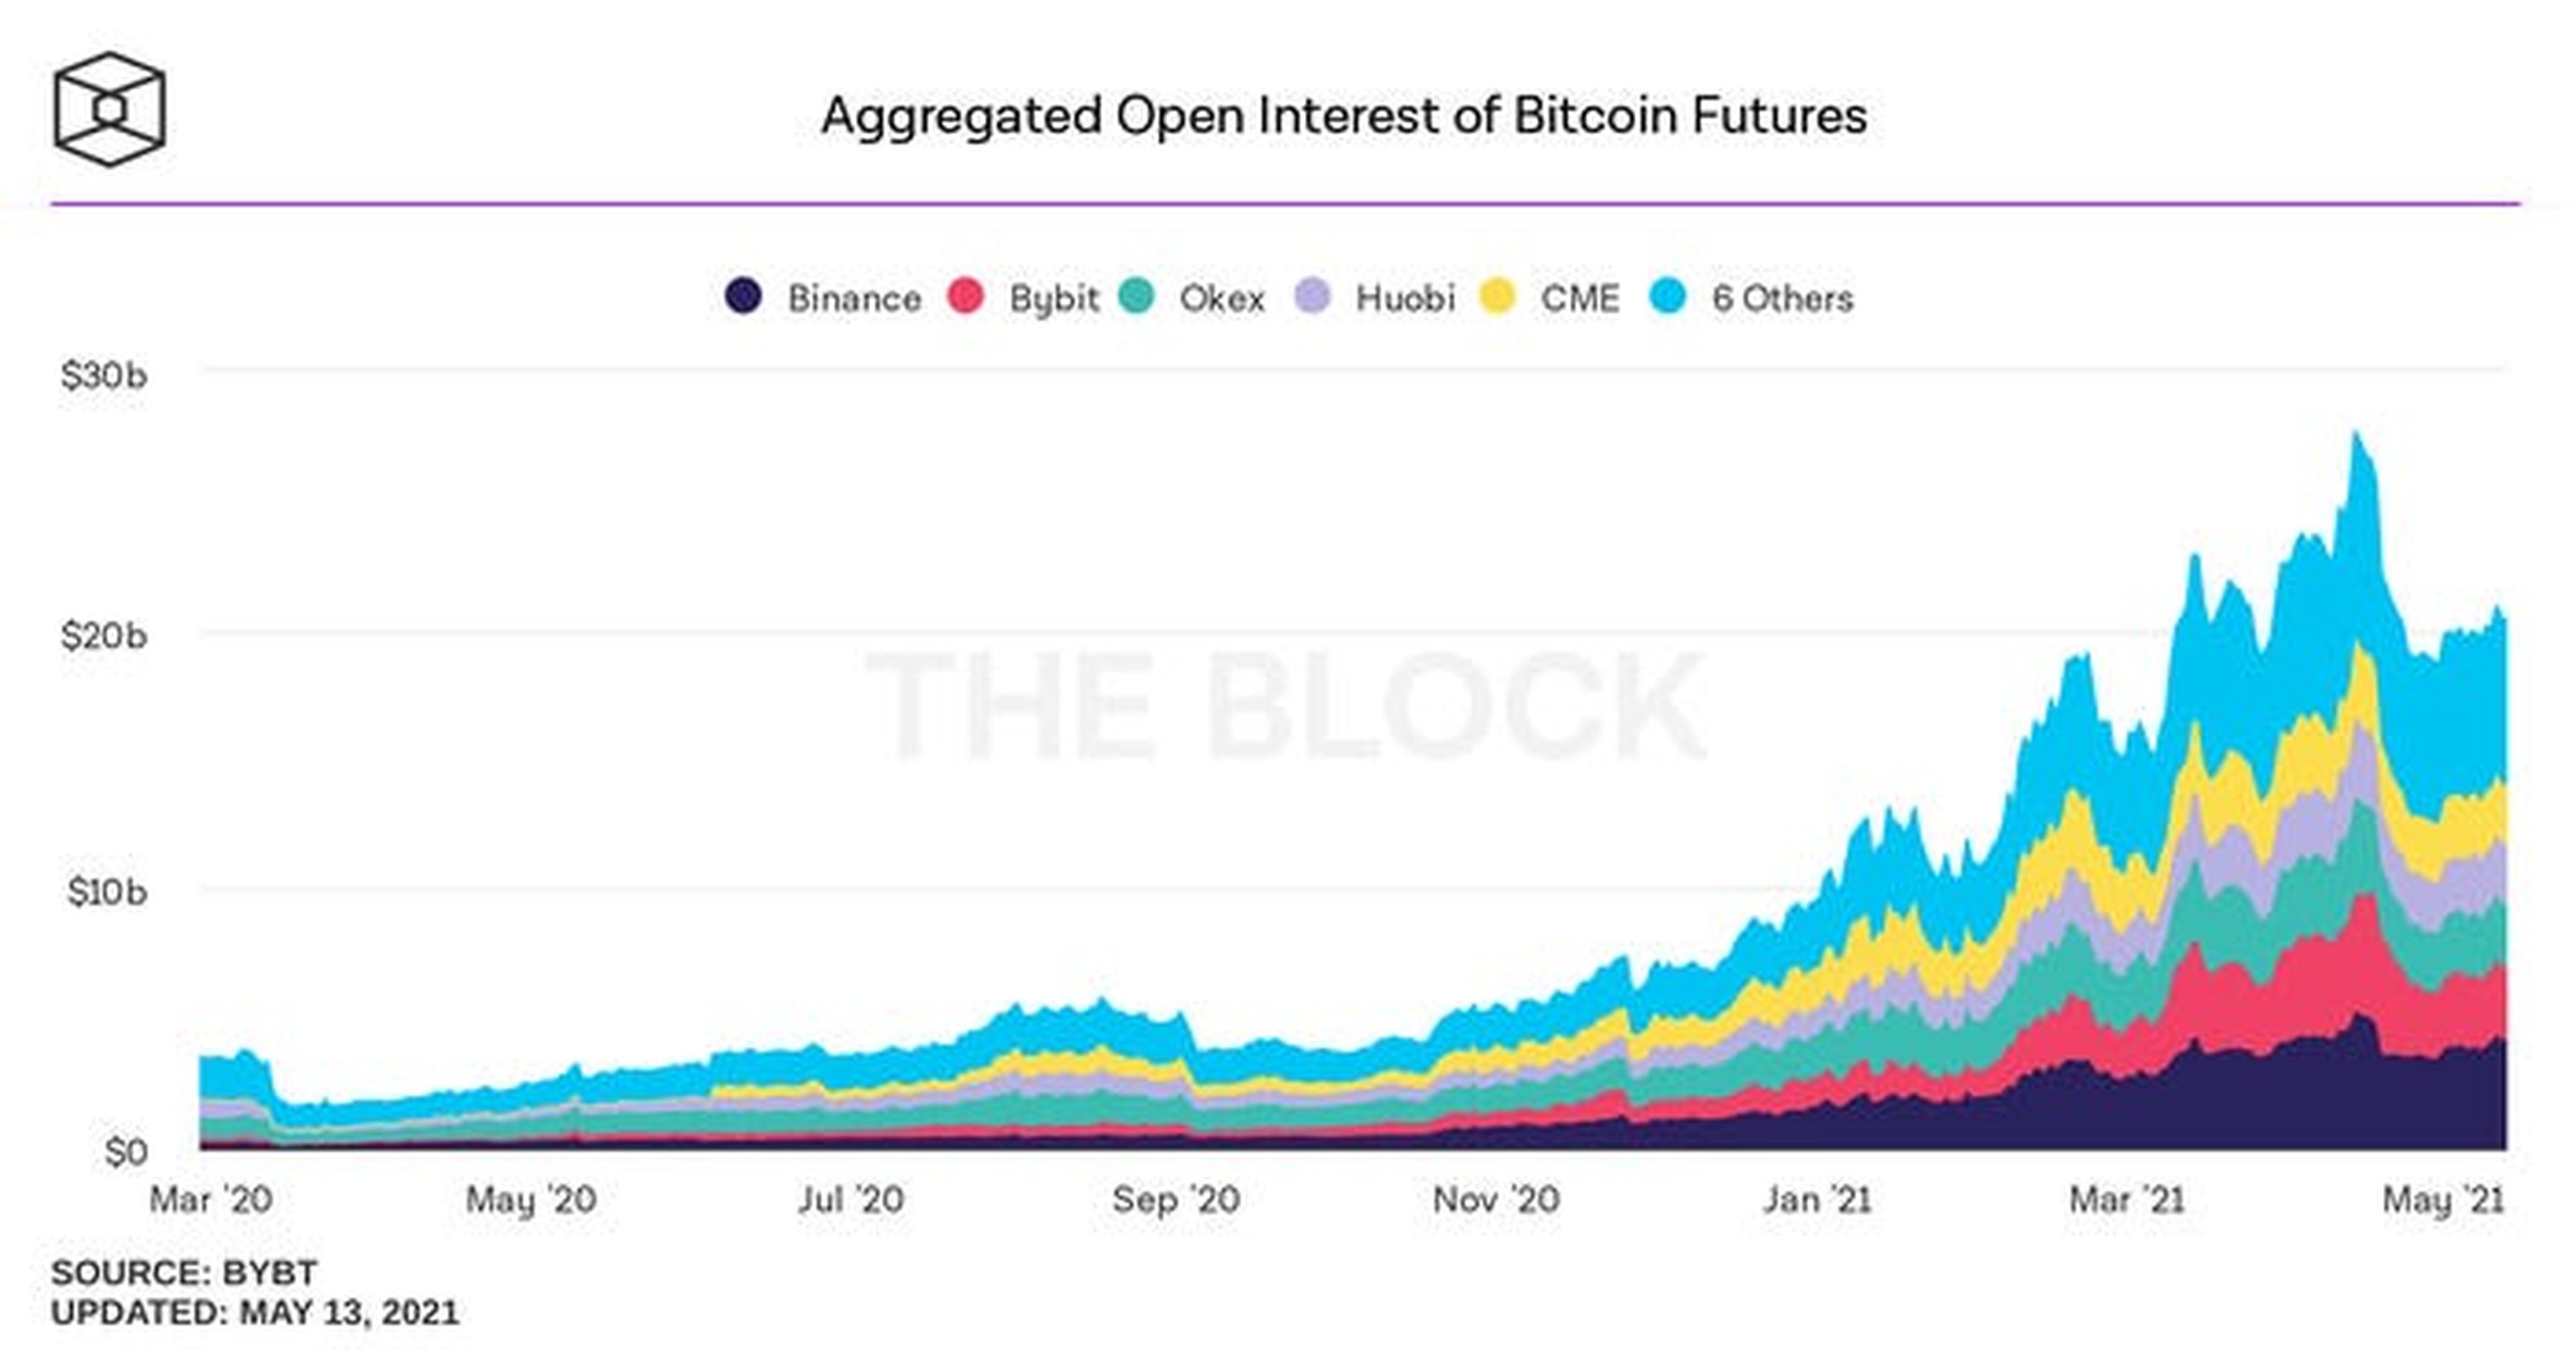 Interés abierto agregado de futuros de bitcoins de The Block.